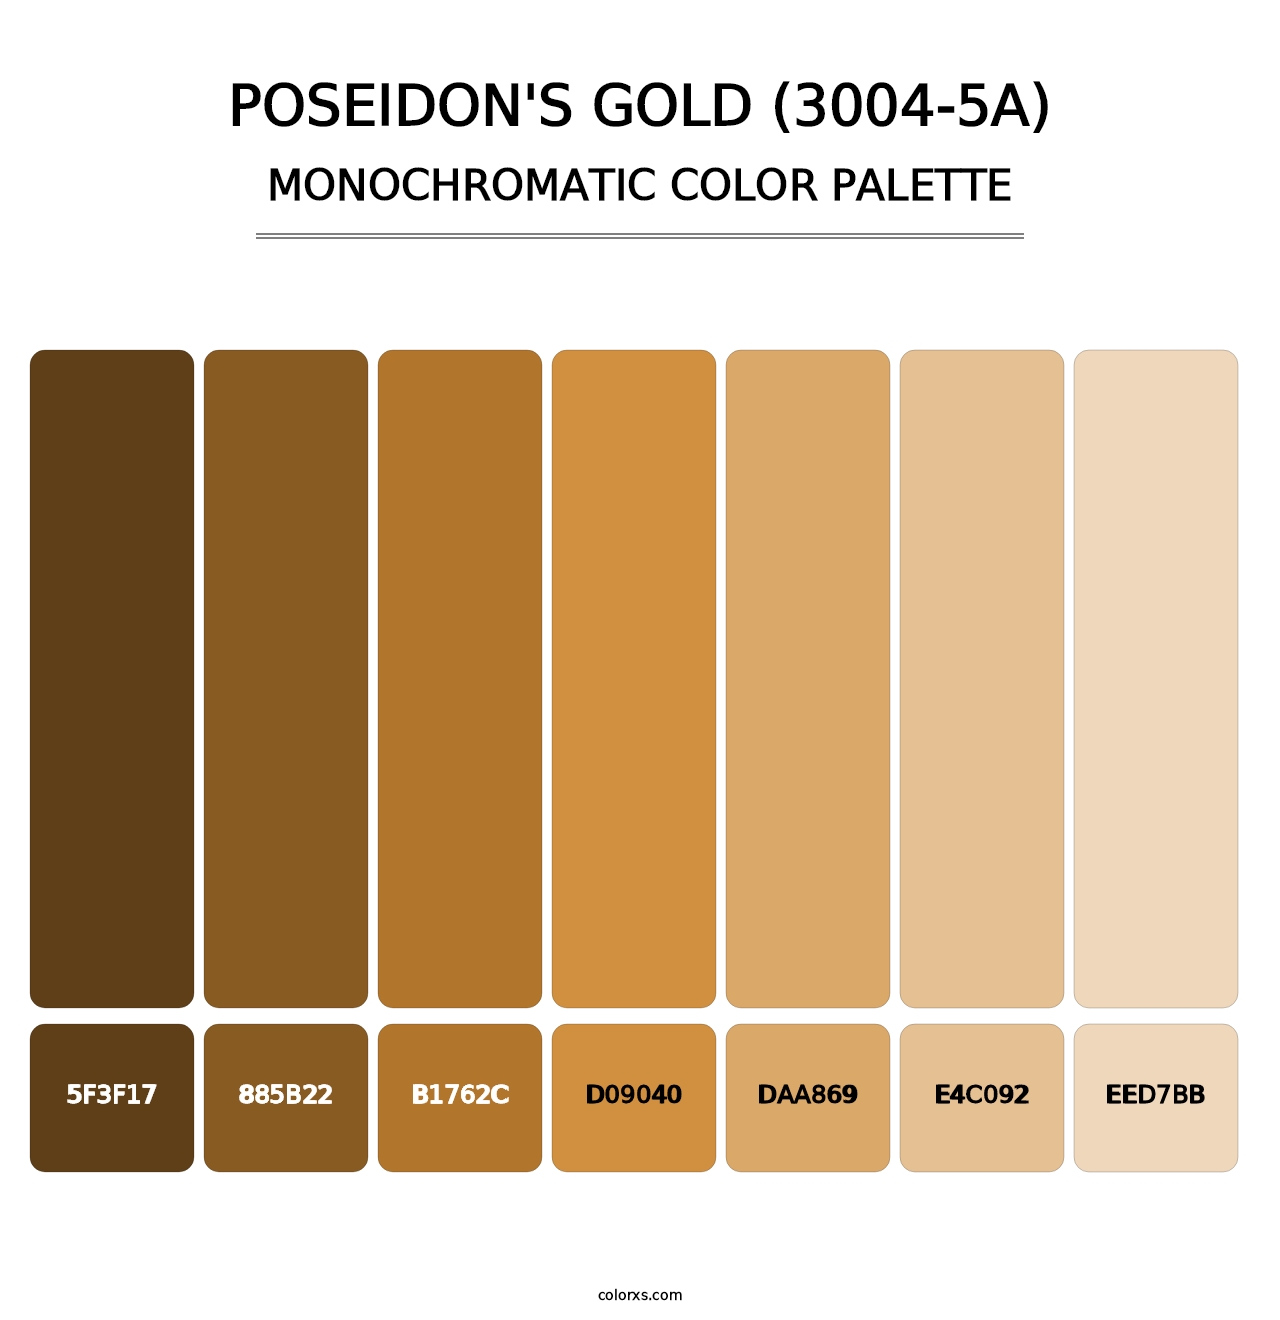 Poseidon's Gold (3004-5A) - Monochromatic Color Palette